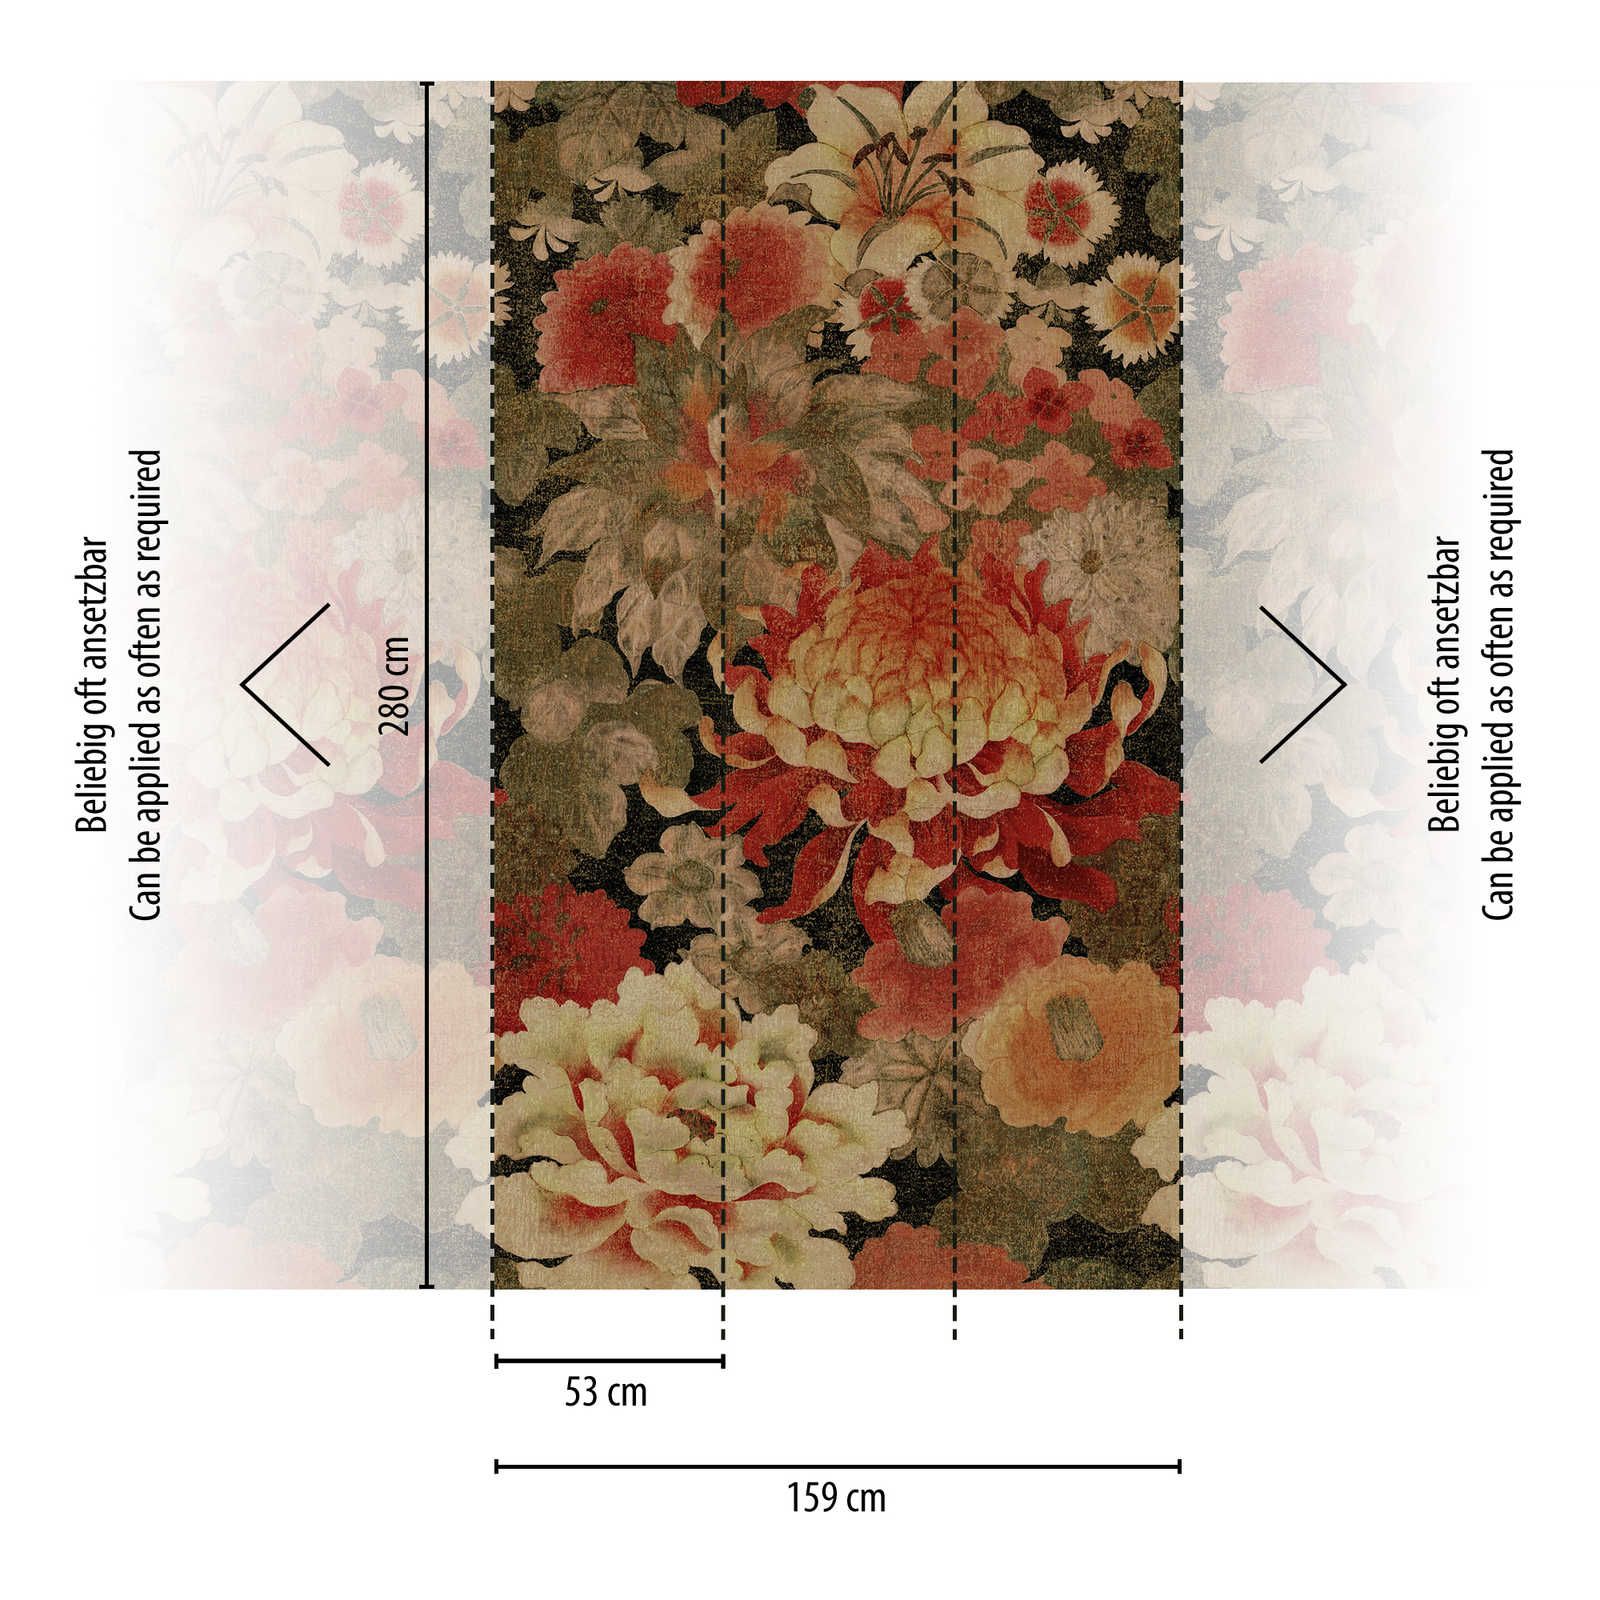             Vliestapete mit großflächigen floralen Muster – Beige, Rot, Grün
        